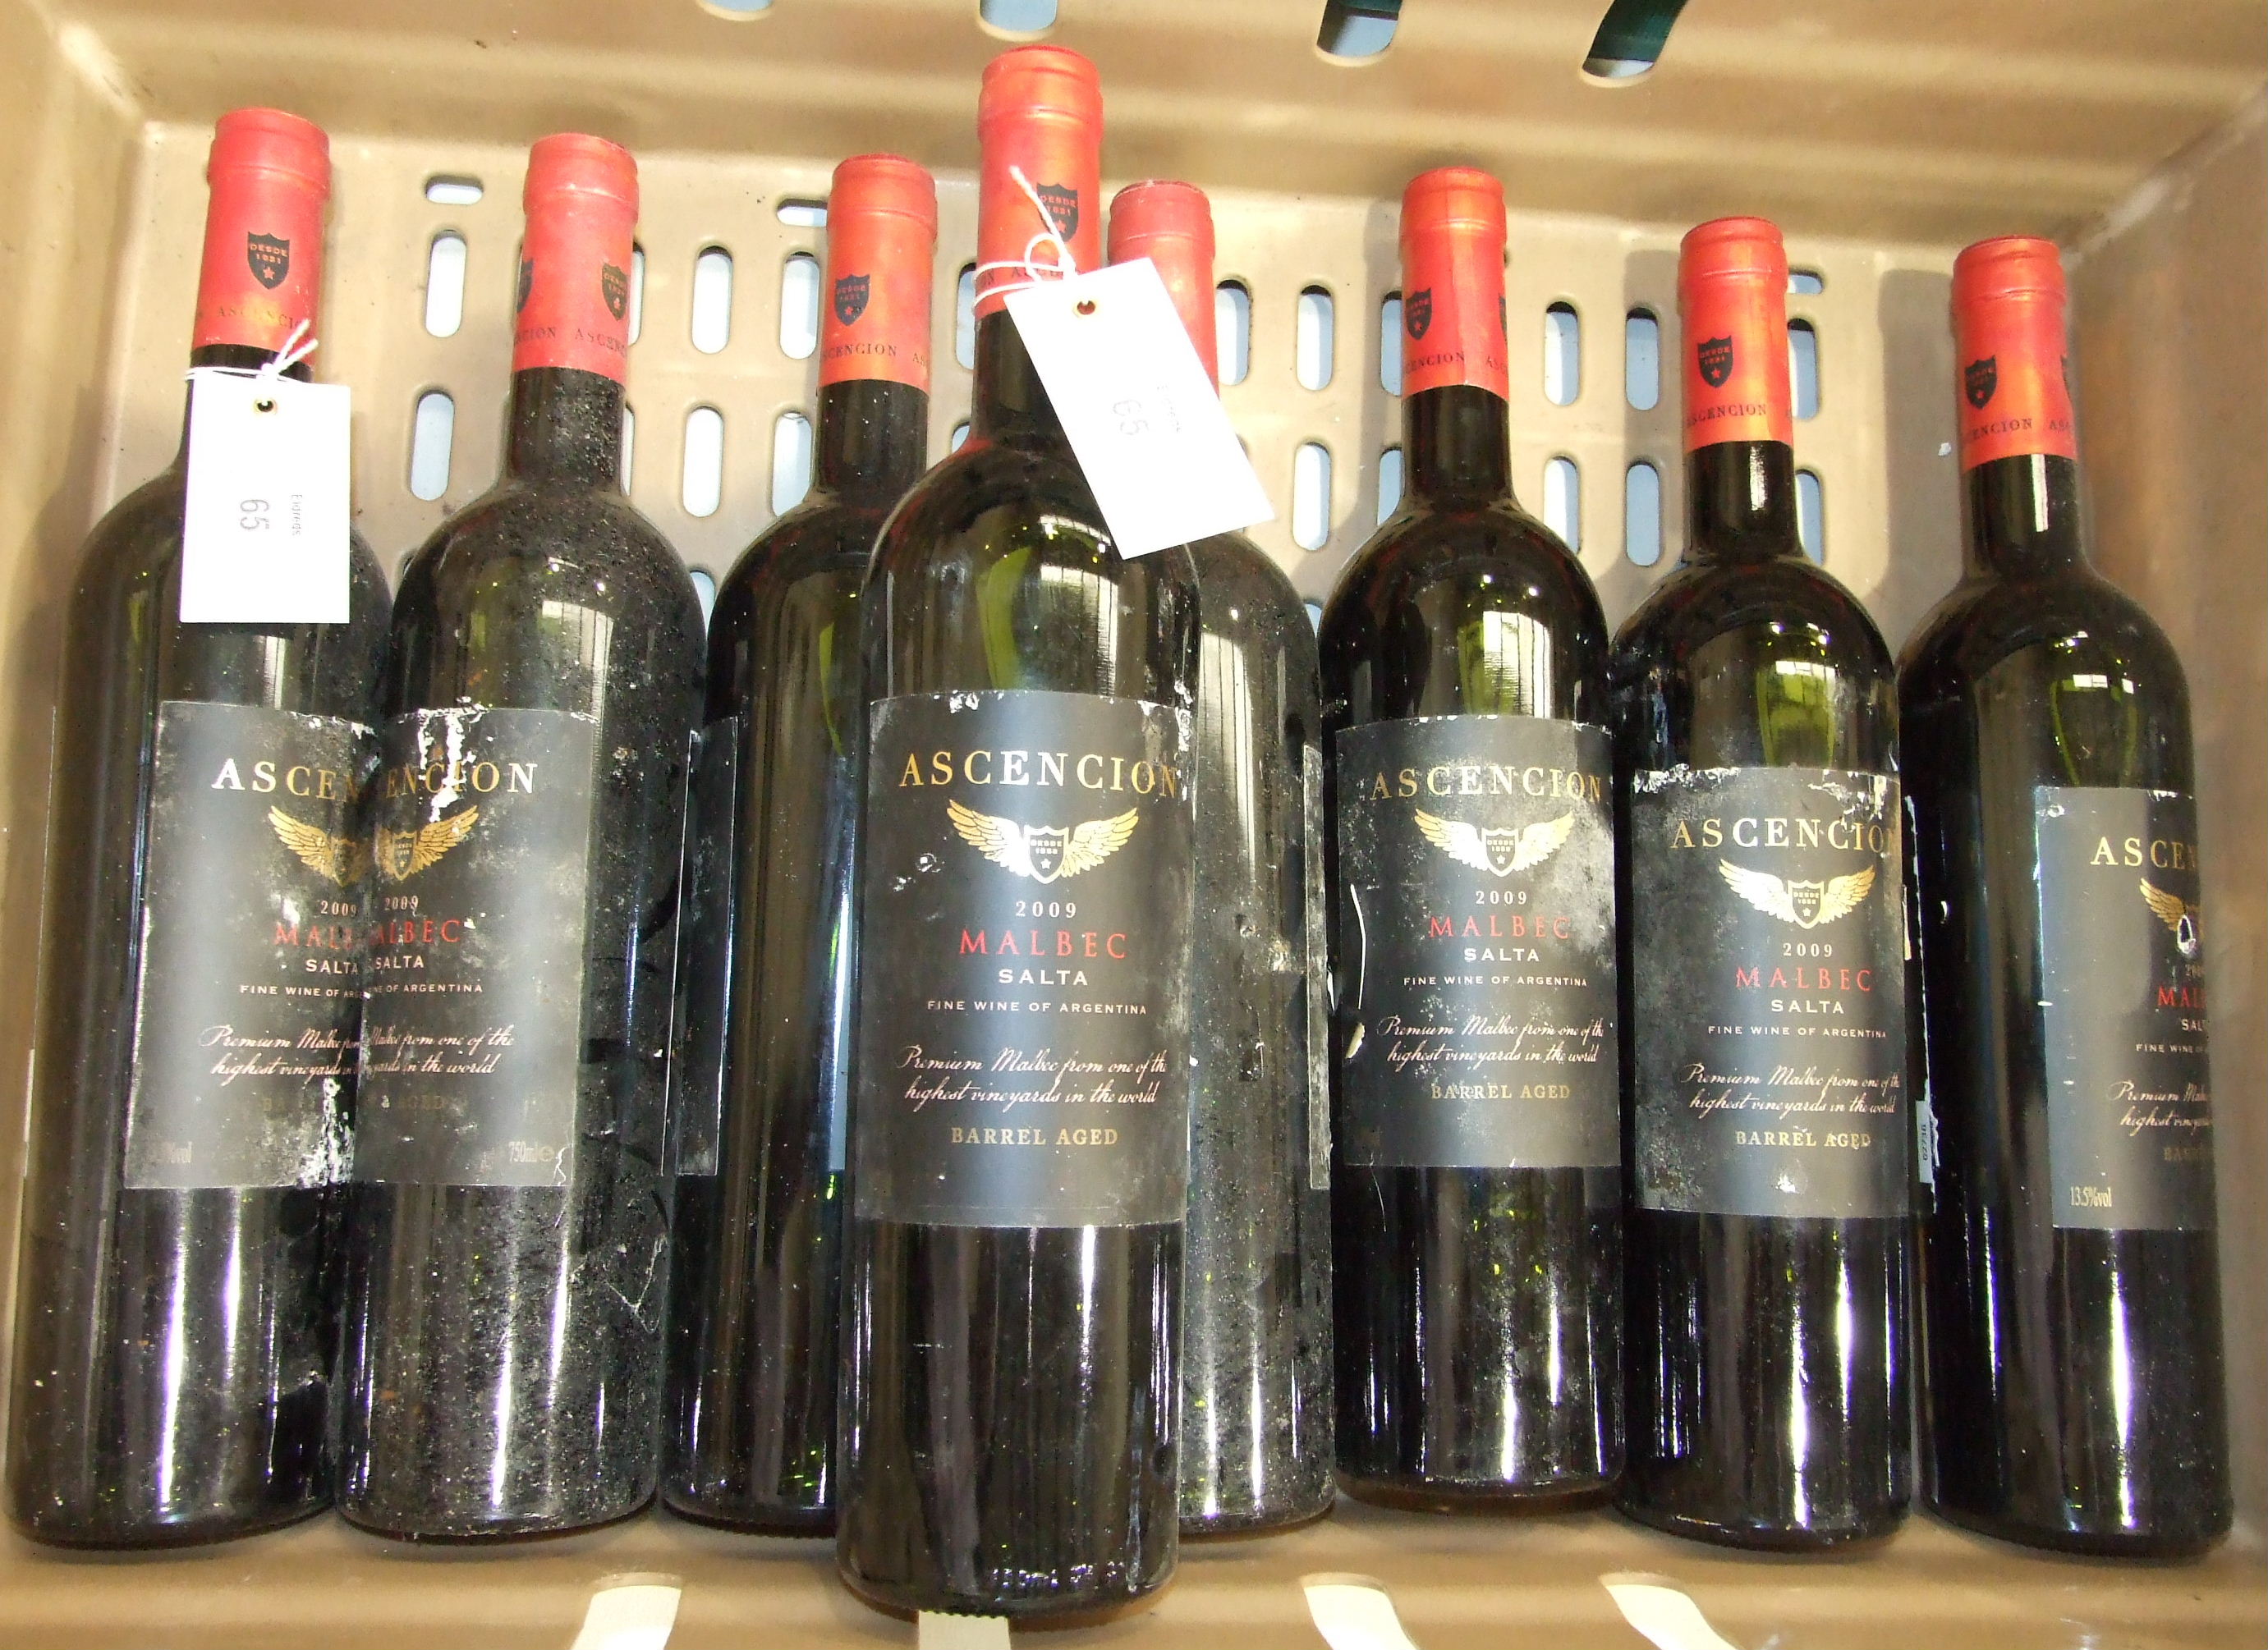 Ascension Malbec 2009, Argentina, 8 bottles.